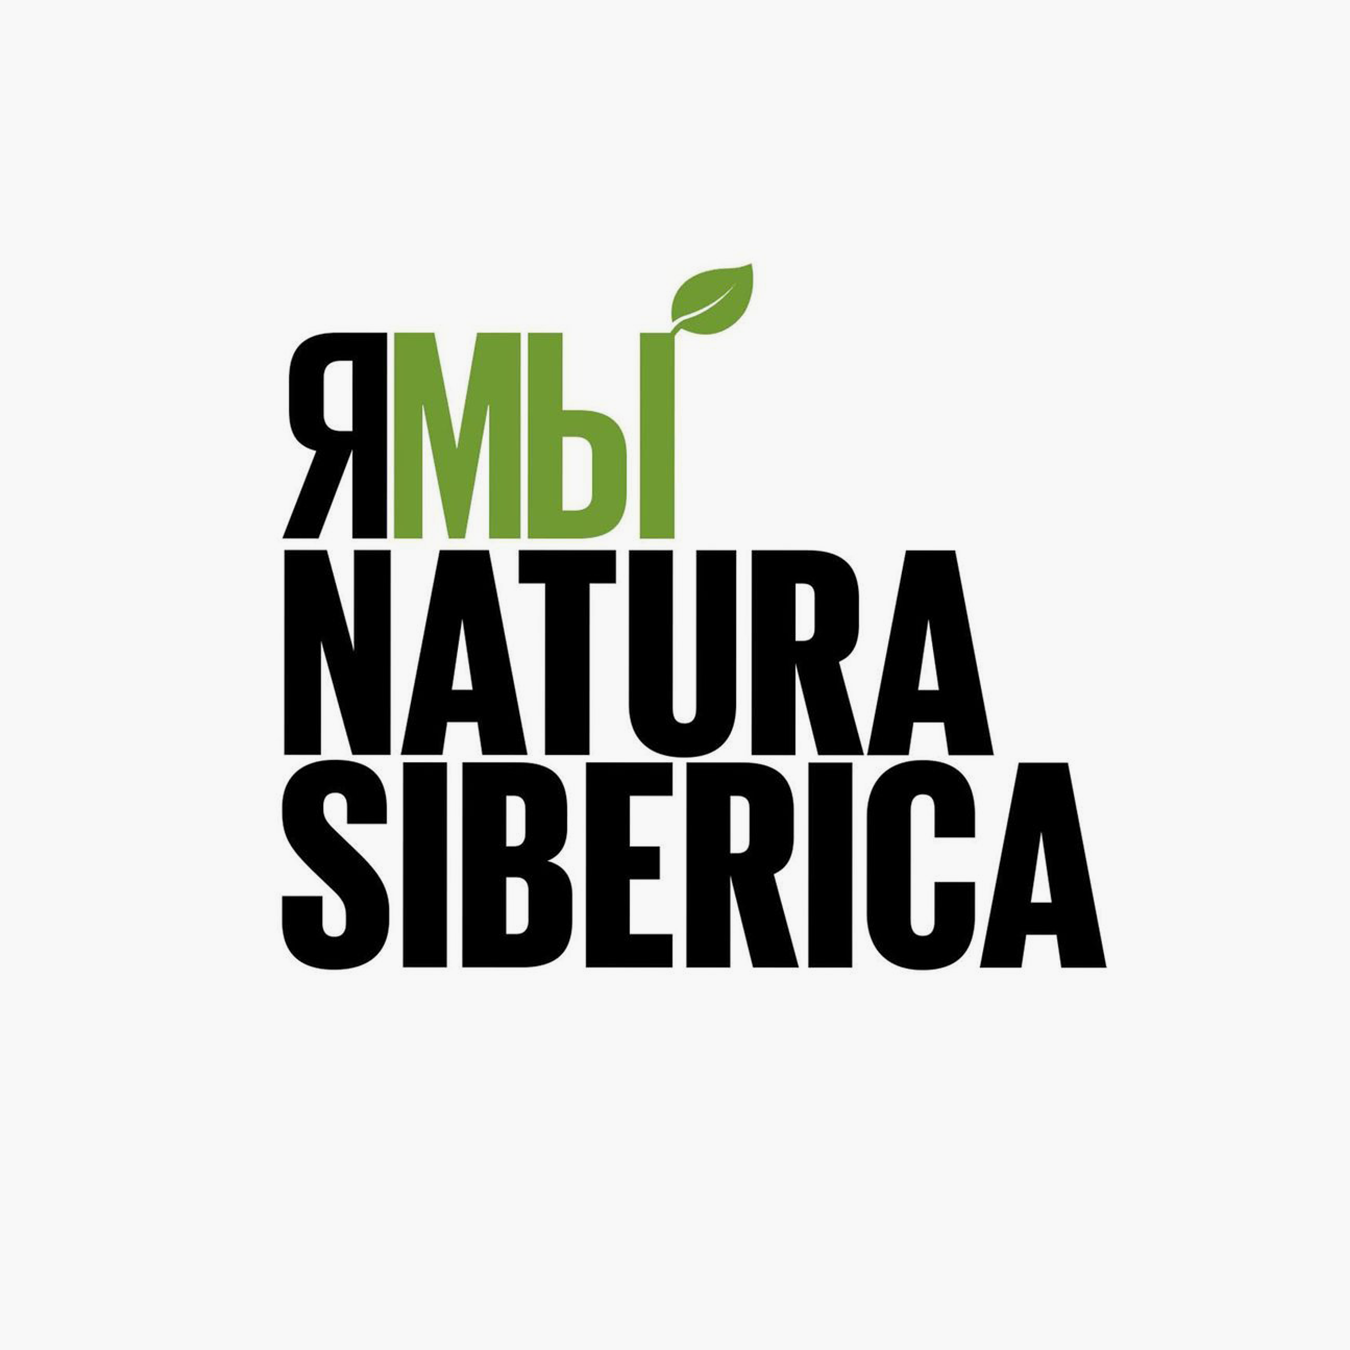 Natura Siberica прекращает свою работу. Вспоминаем историю конфликта внутри бренда